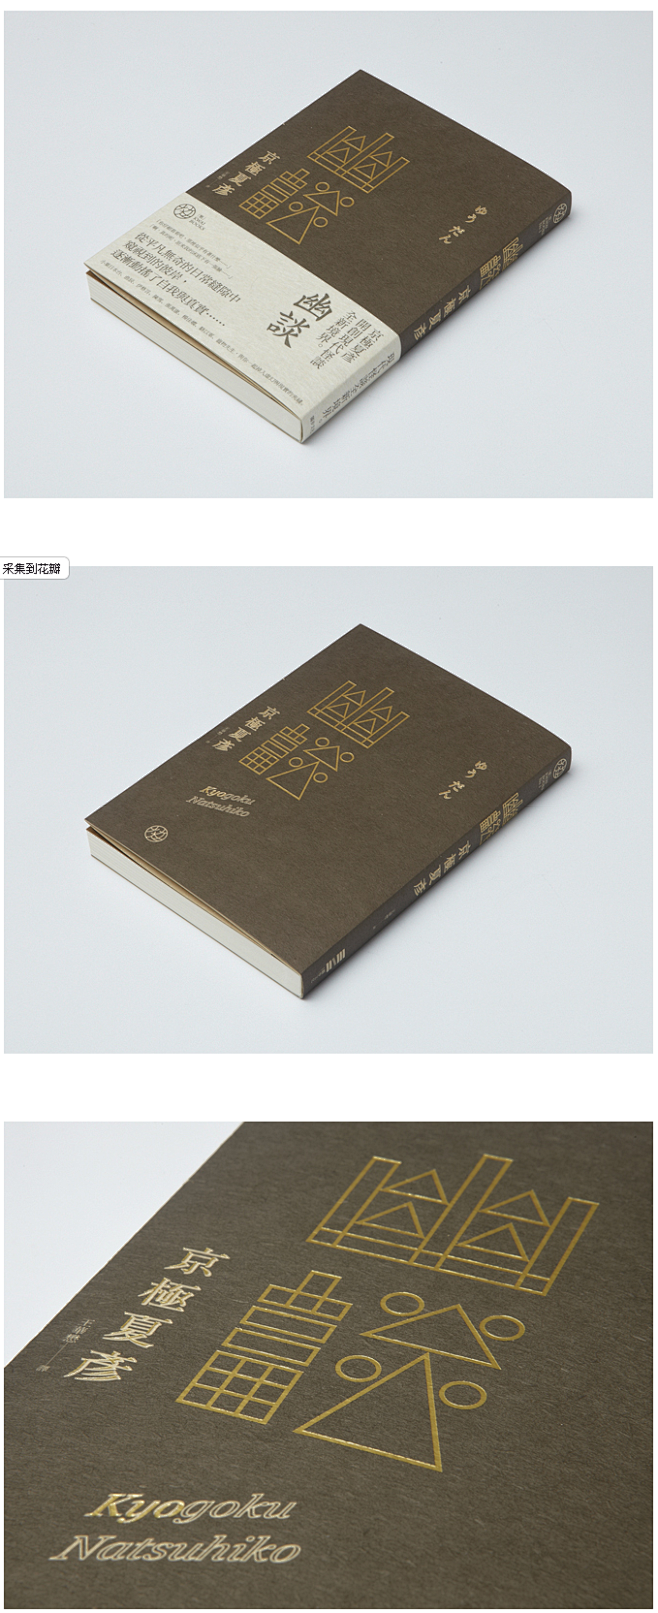 台湾设计师王志弘书籍装帧作品——壹-设计...